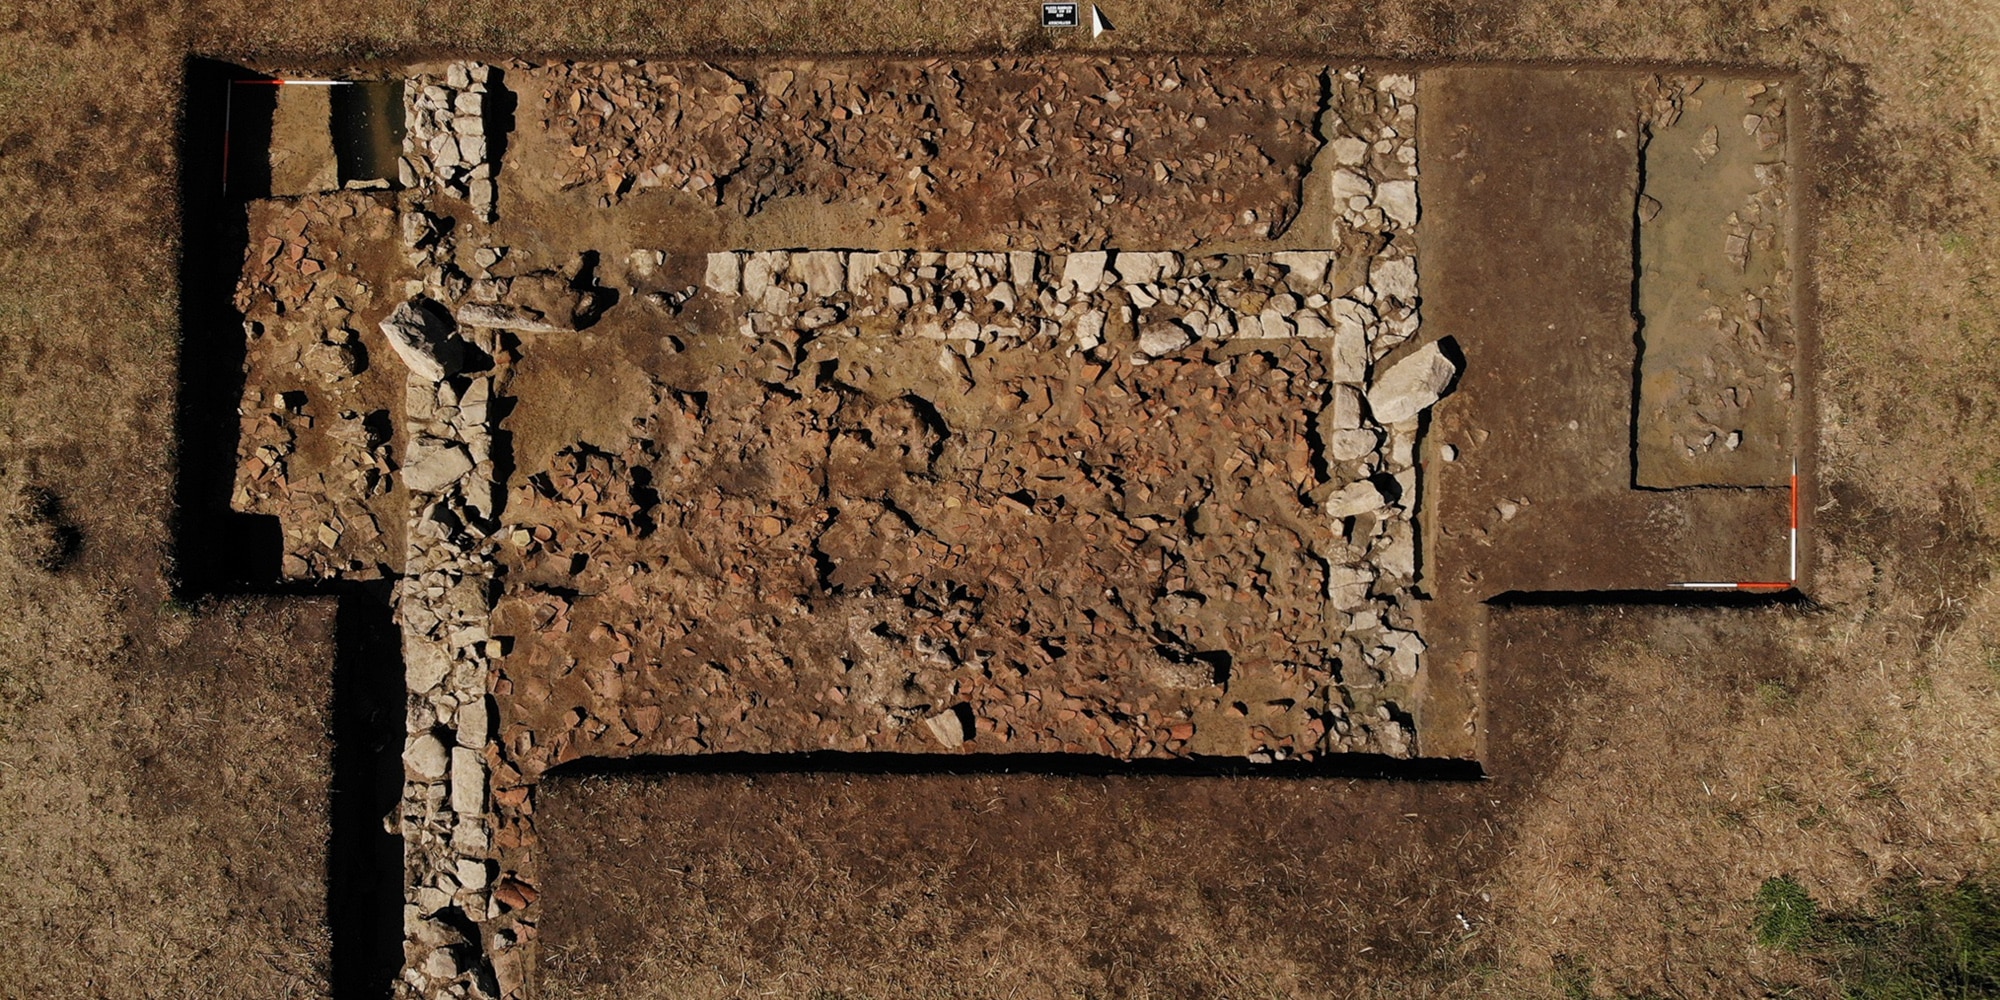 Kτηριακά κατάλοιπα που μπορούν να αποδοθούν στο ιερό του Ποσειδώνα εντοπίστηκαν στην πρώτη ανασκαφική περίοδο του πενταετούς ερευνητικού προγράμματος, (έτη 2022-2026), στο Κλειδί Σαμικού.